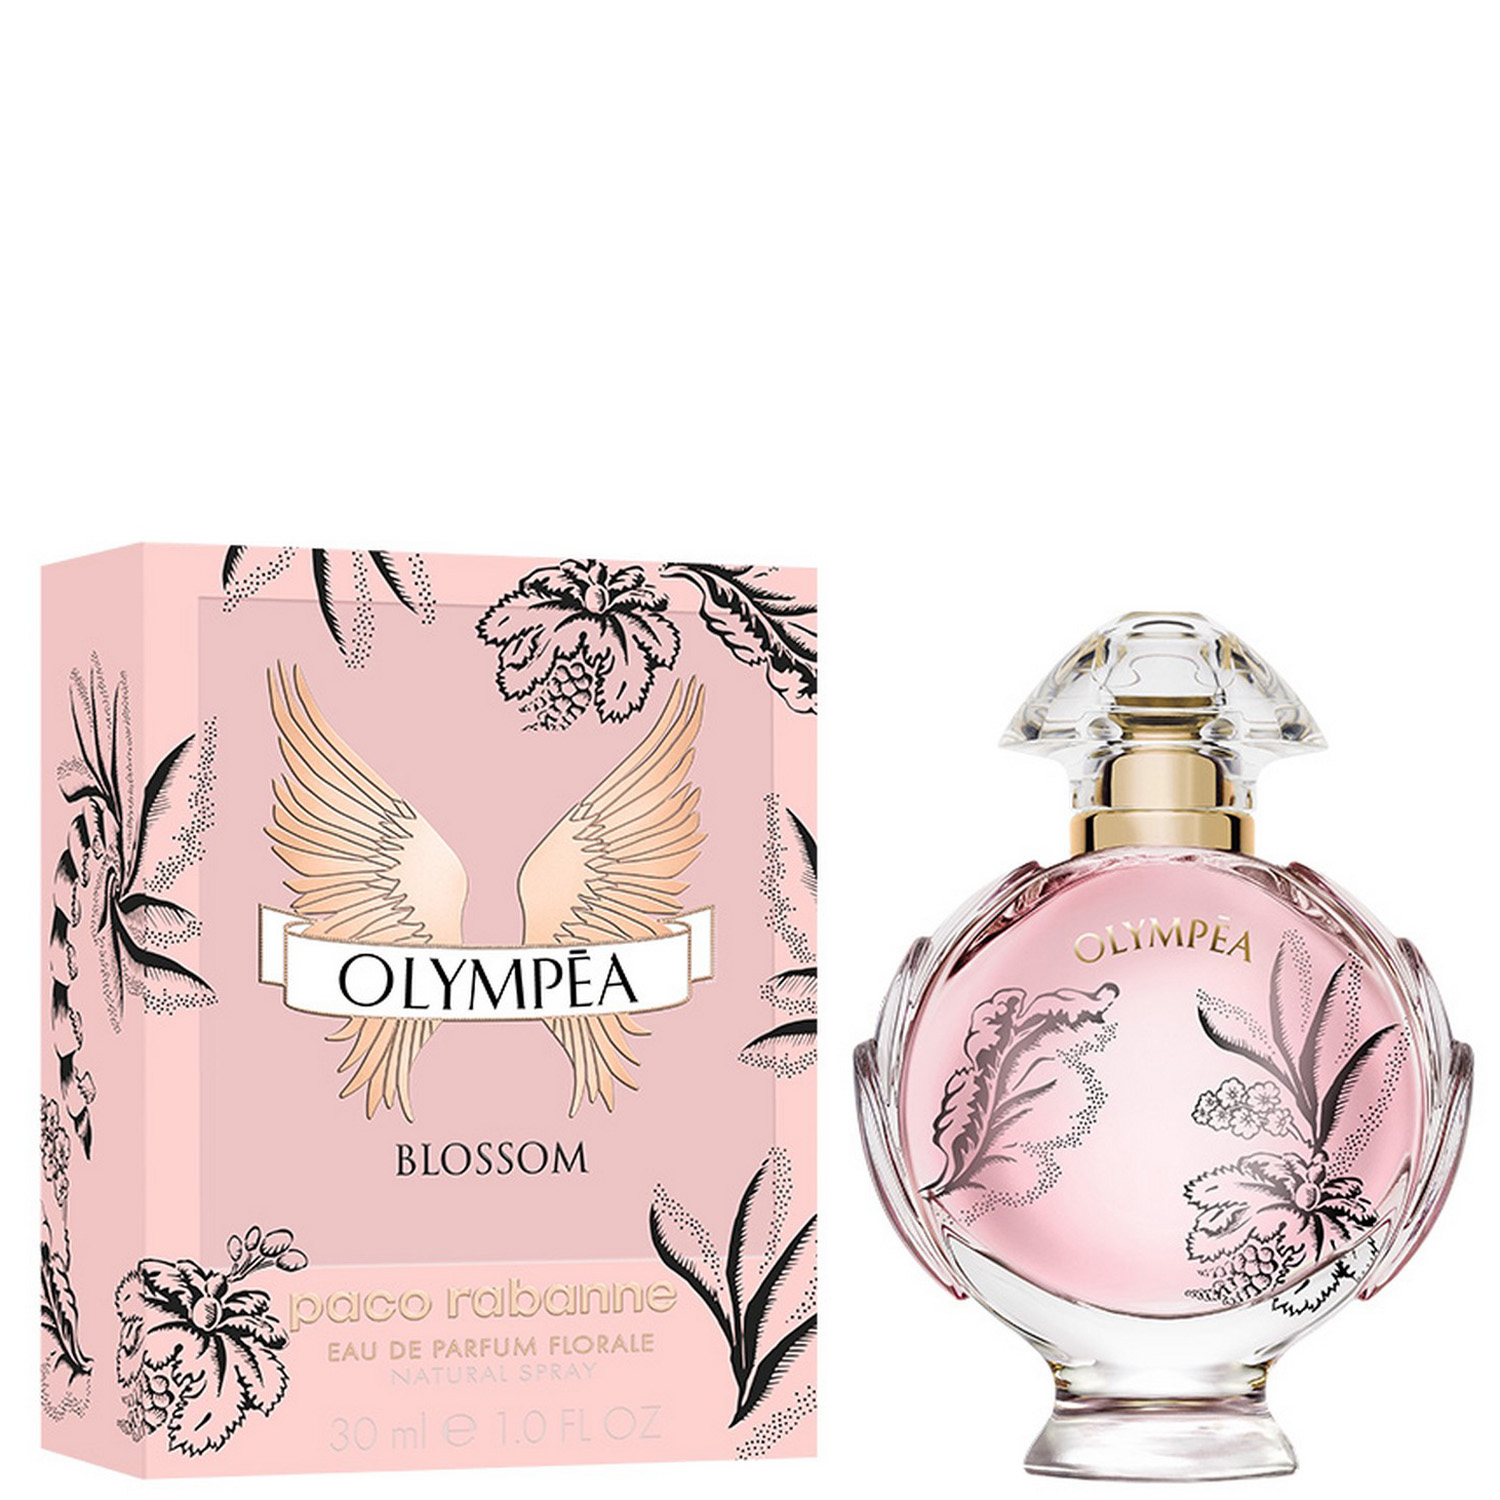 Paco Rabanne Olympea Blossom Eau de Parfum Florale 30ml